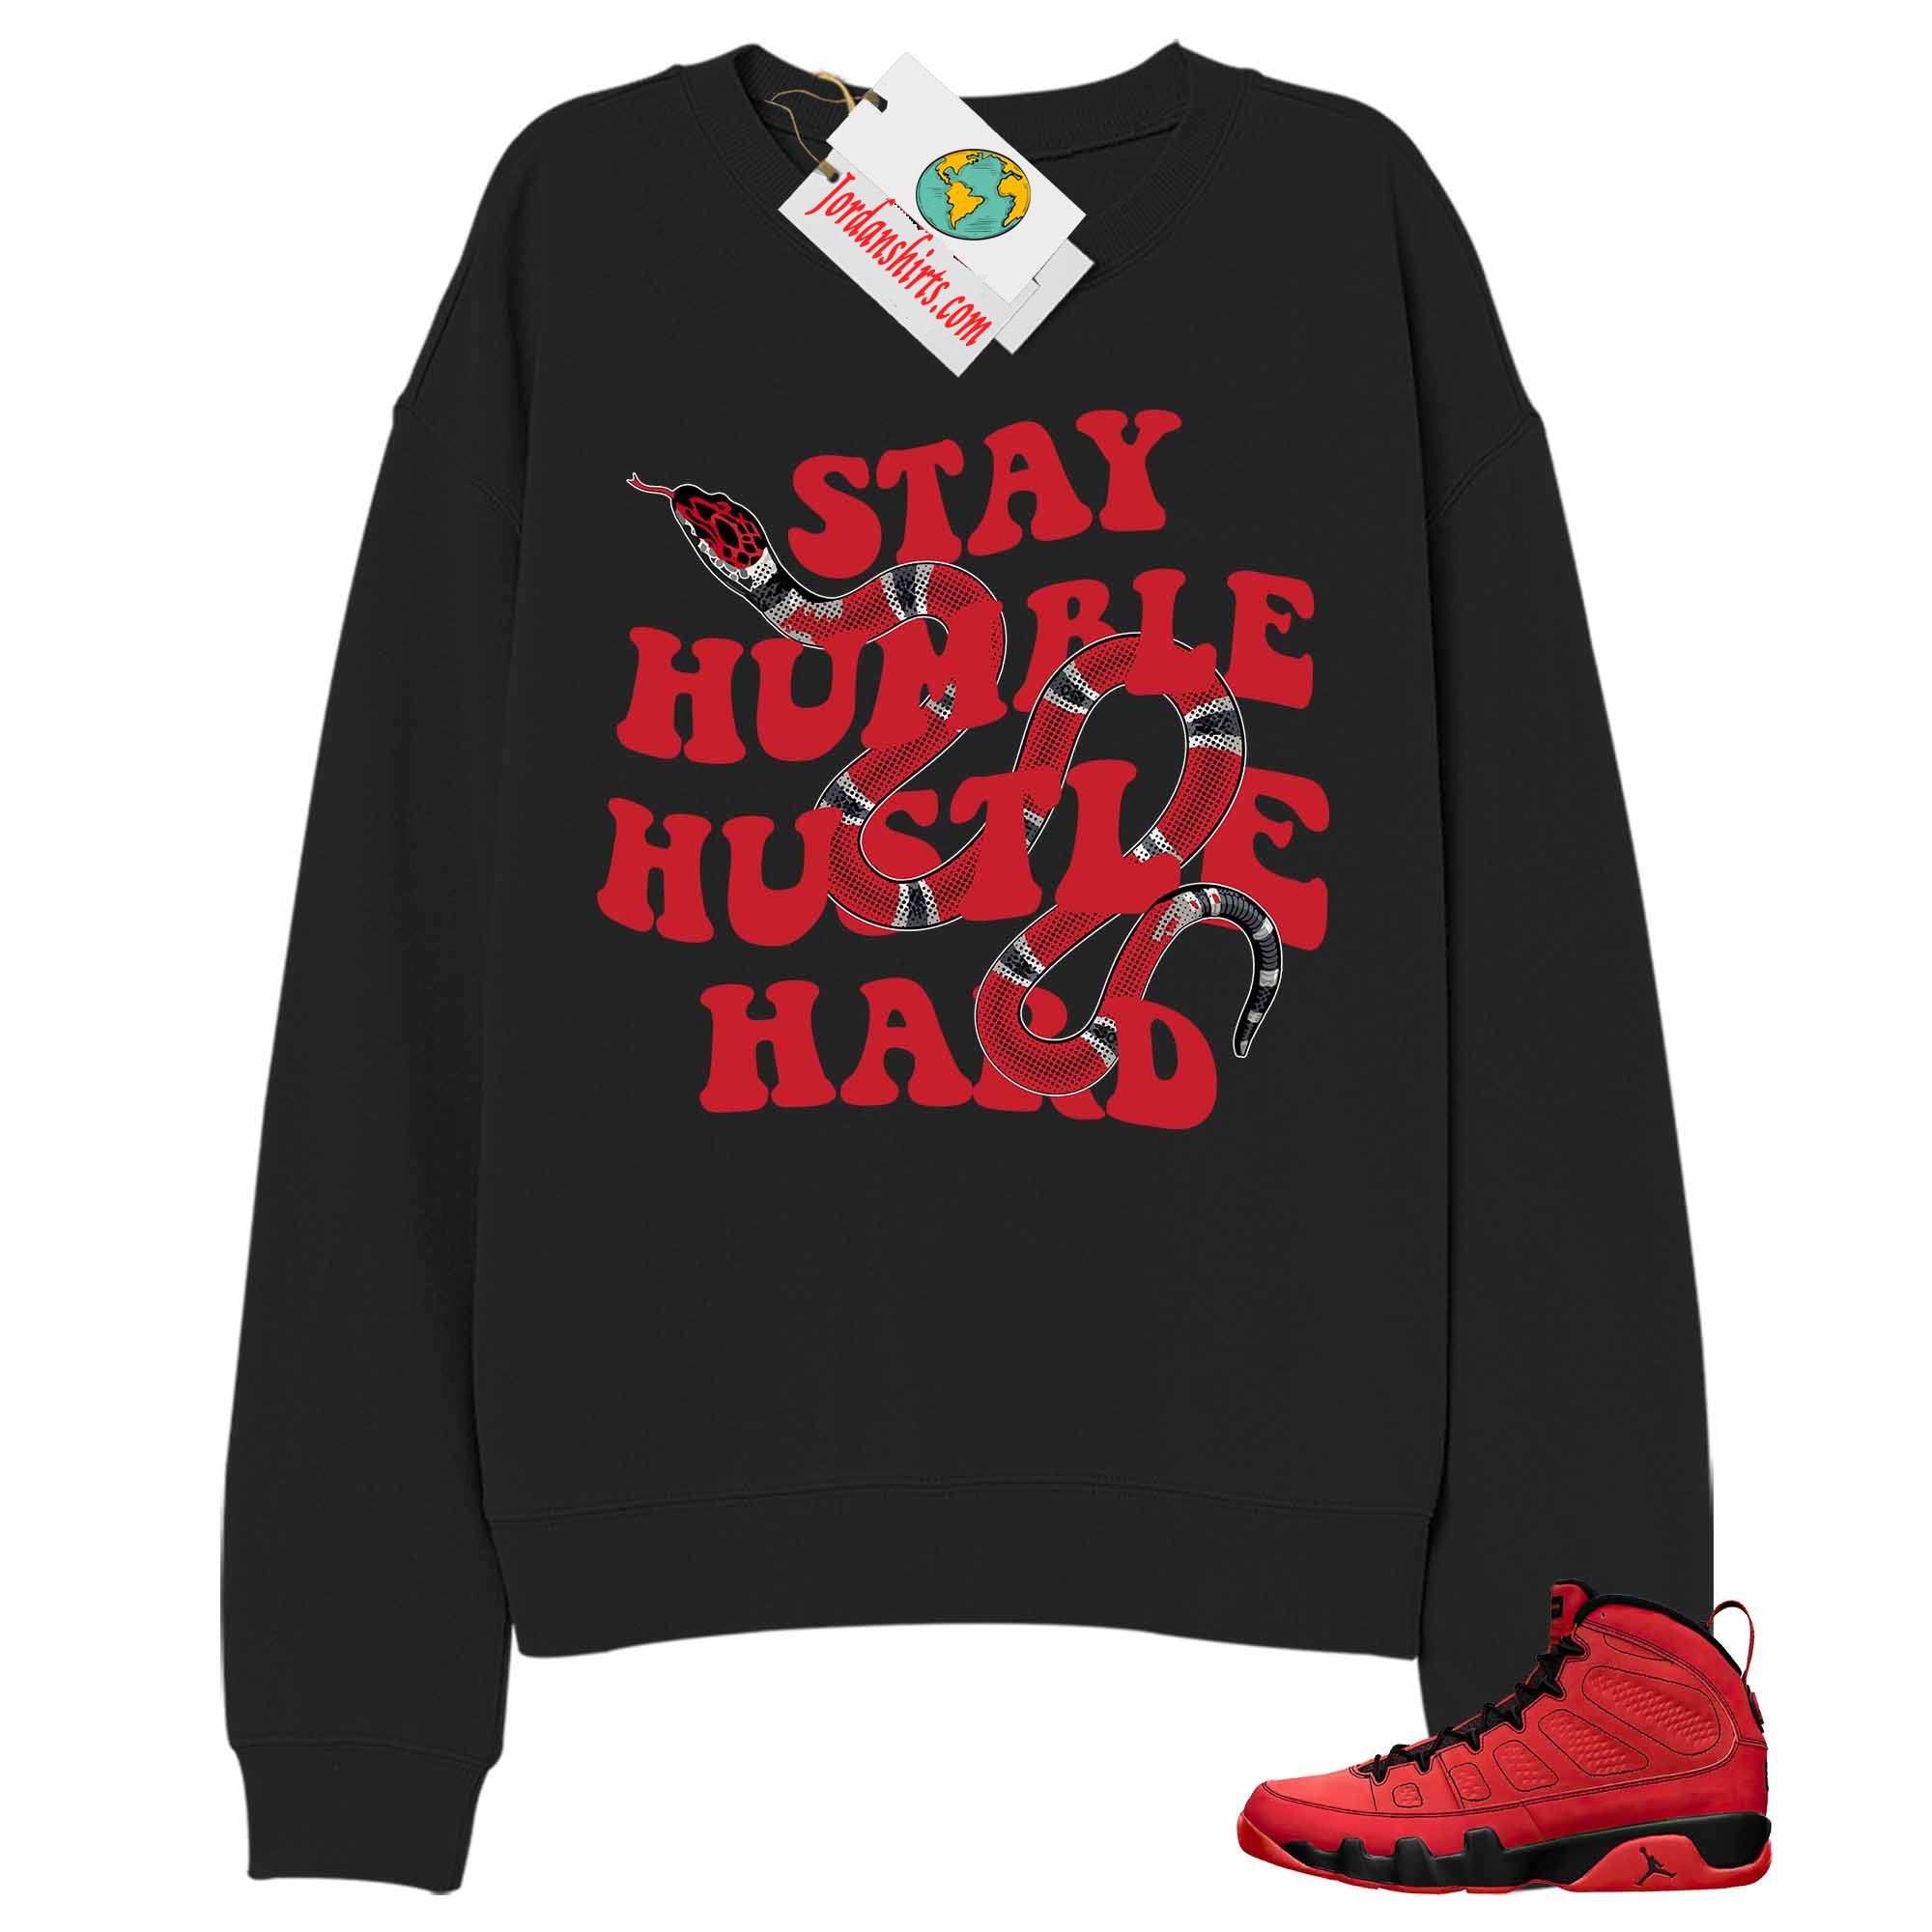 Jordan 9 Sweatshirt, Stay Humble Hustle Hard King Snake Black Sweatshirt Air Jordan 9 Chile Red 9s Full Size Up To 5xl